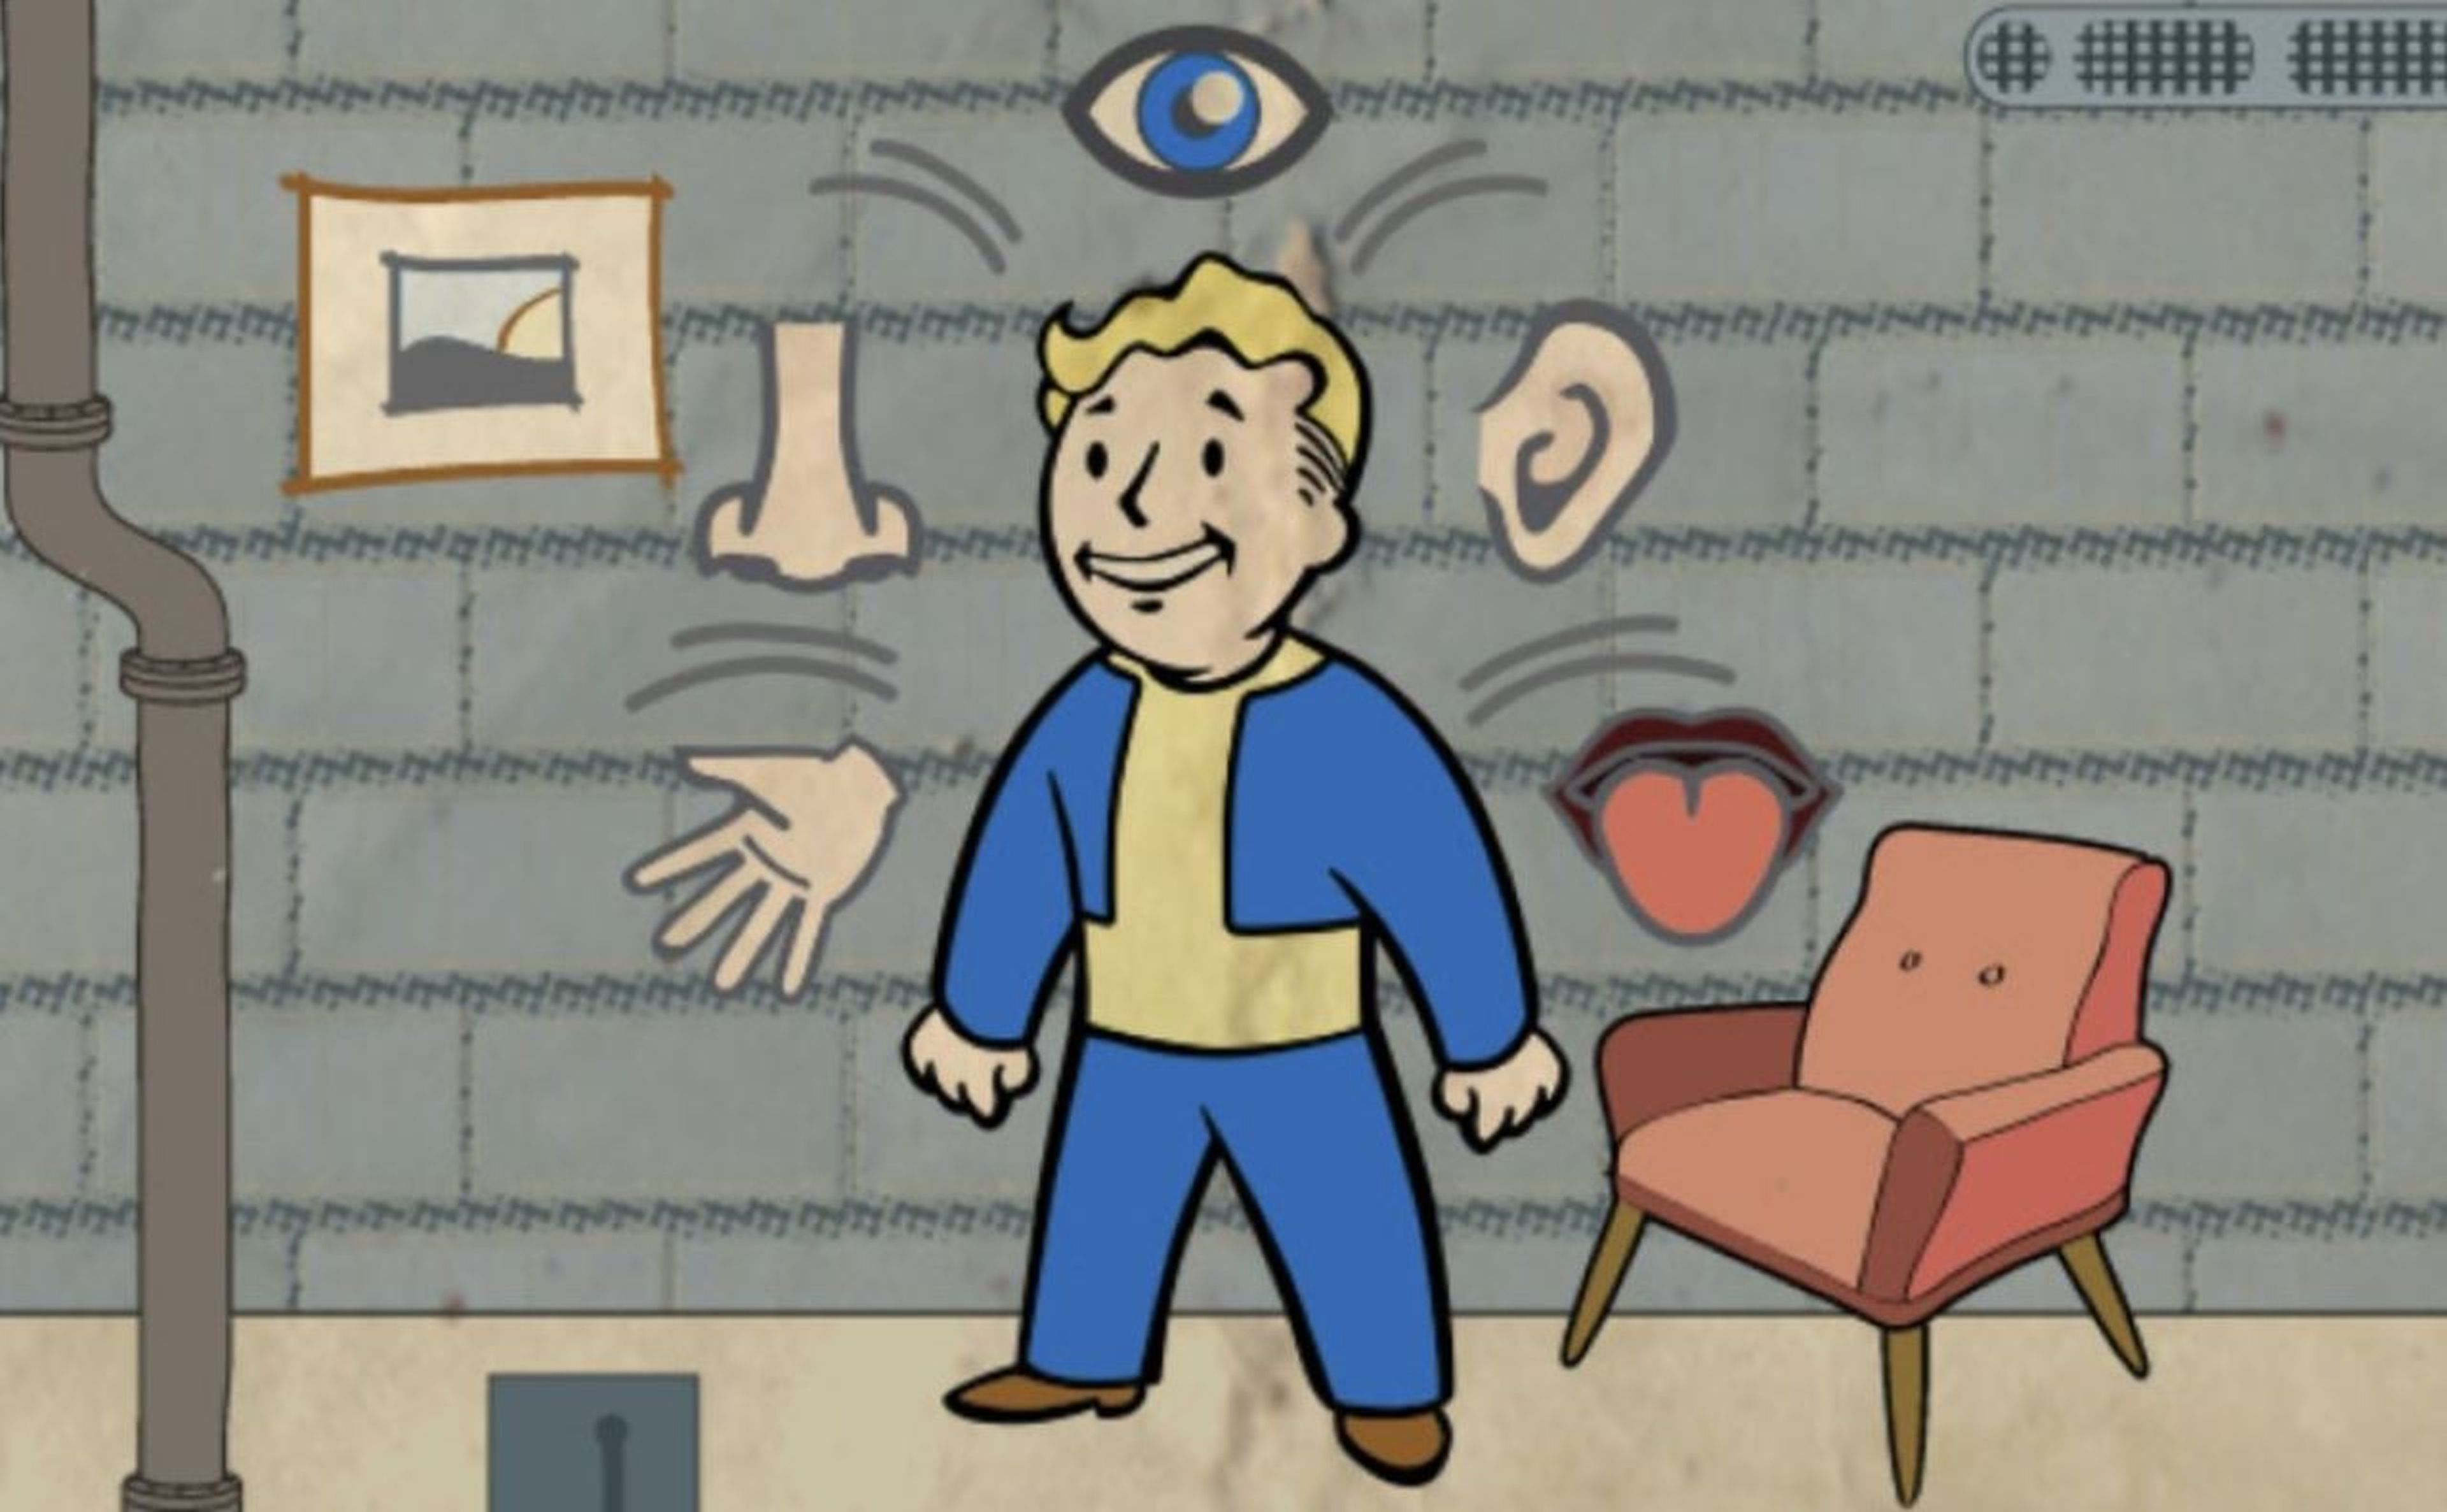 Todos los extras de Percepción en Fallout 4